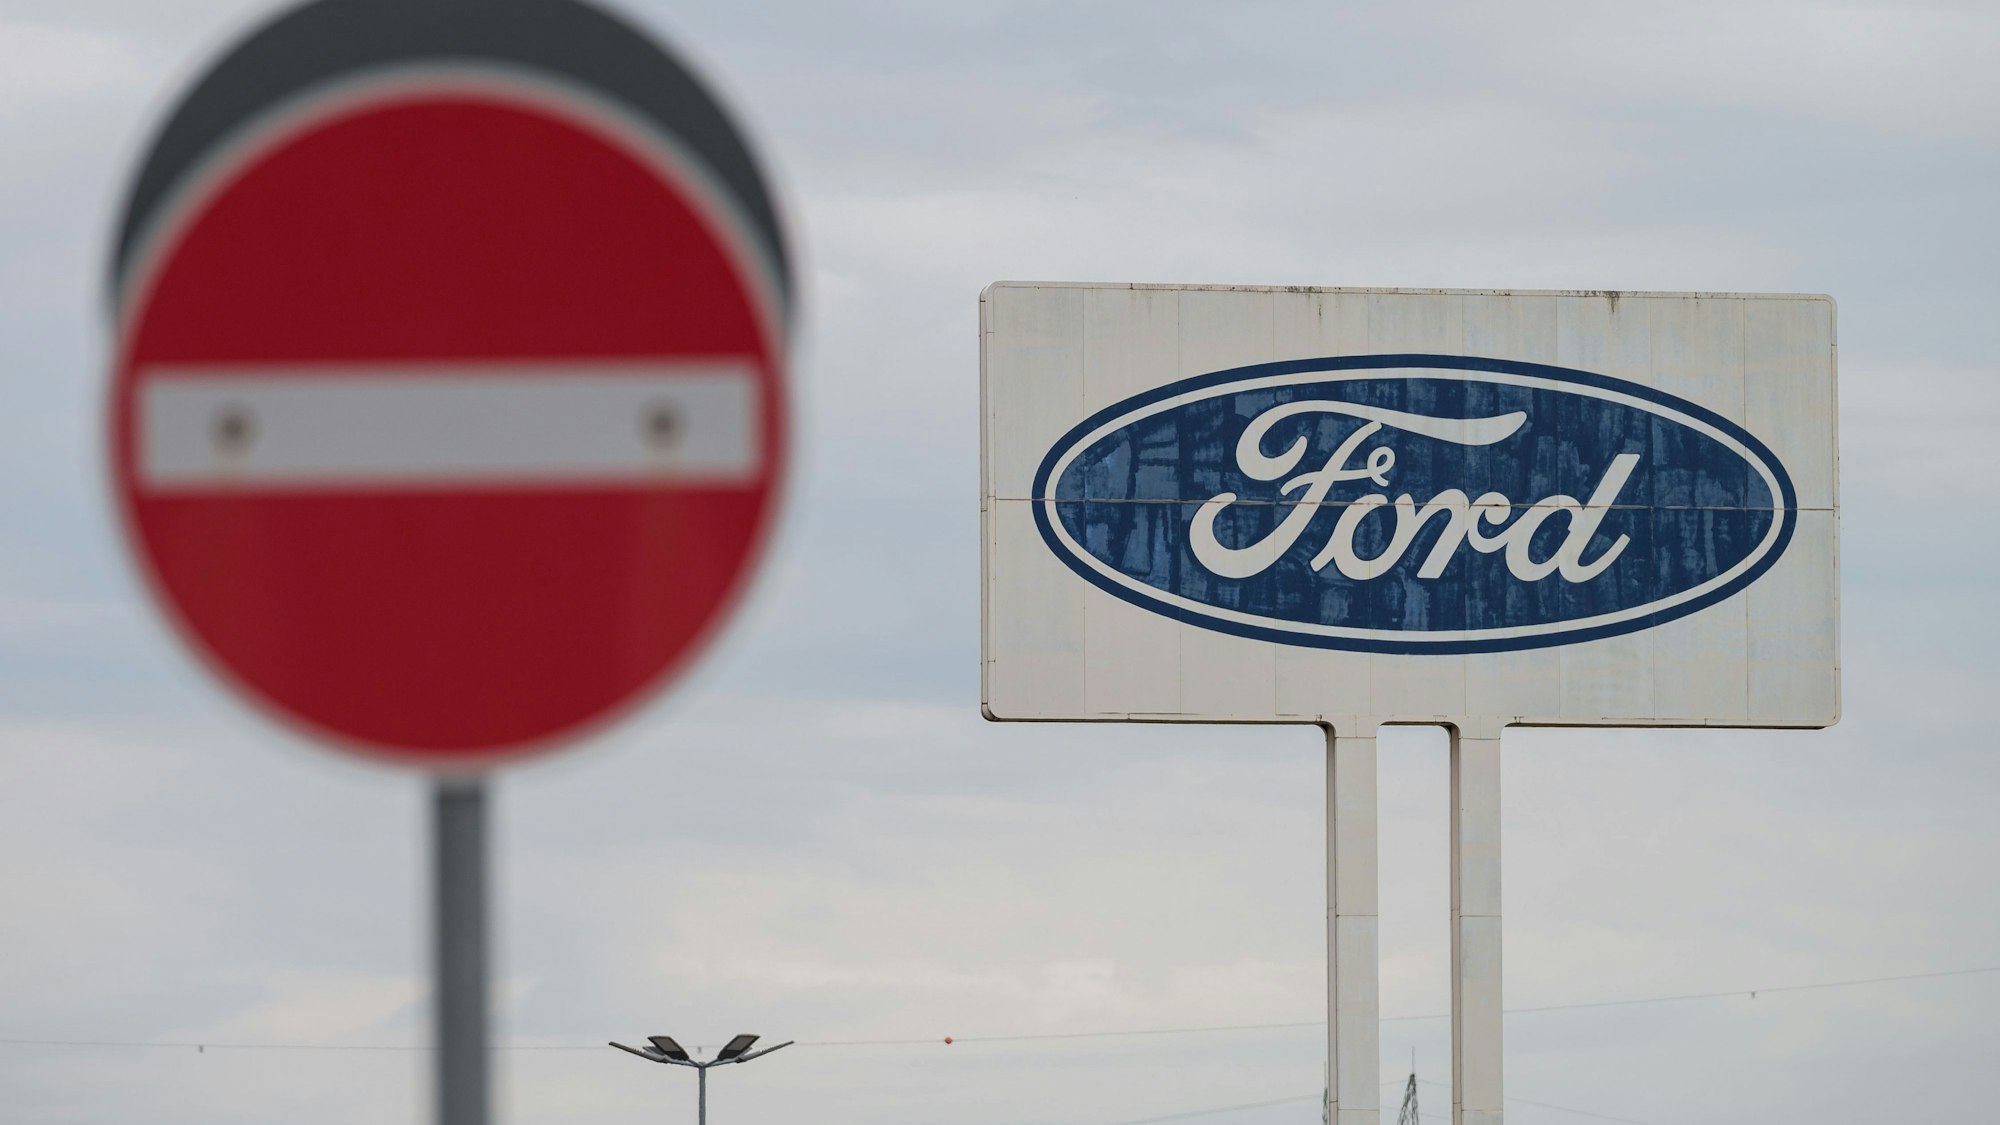 Das große Logo von Ford, das auf dem Parkplatz des Werks Saarlouis steht, mit einem Durchfahrt Verboten Schild davor. Der zweitgrößte US-Autobauer Ford muss zahlreiche Fahrzeuge wegen Brandrisiken reparieren.